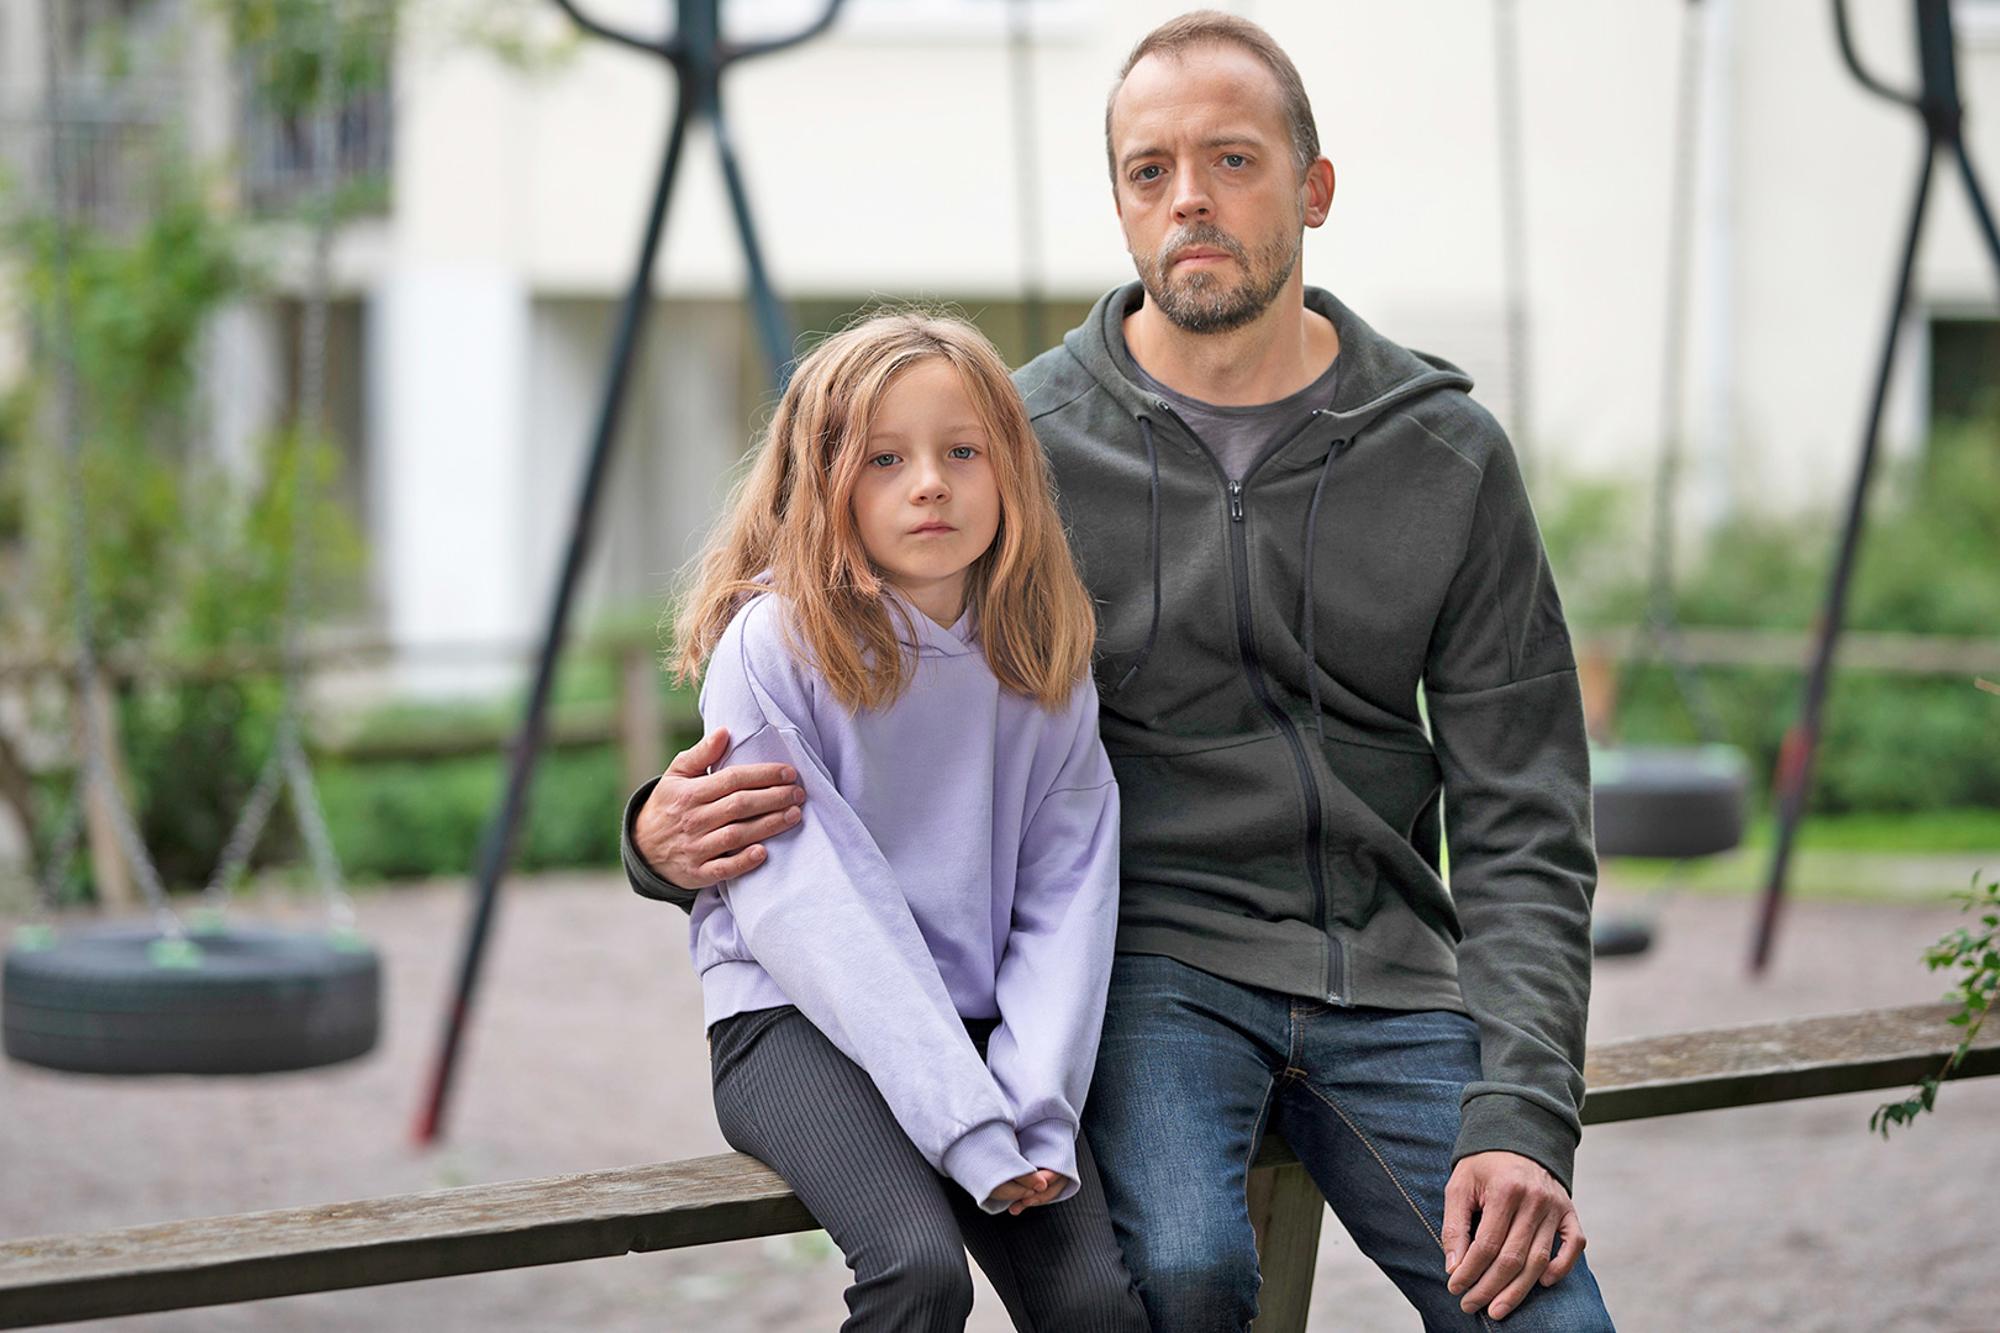 En pappa med dotter i 10-årsåldern sitter på en bank med en lekplats i bakgrunden - de ser bägge allvarliga ut.